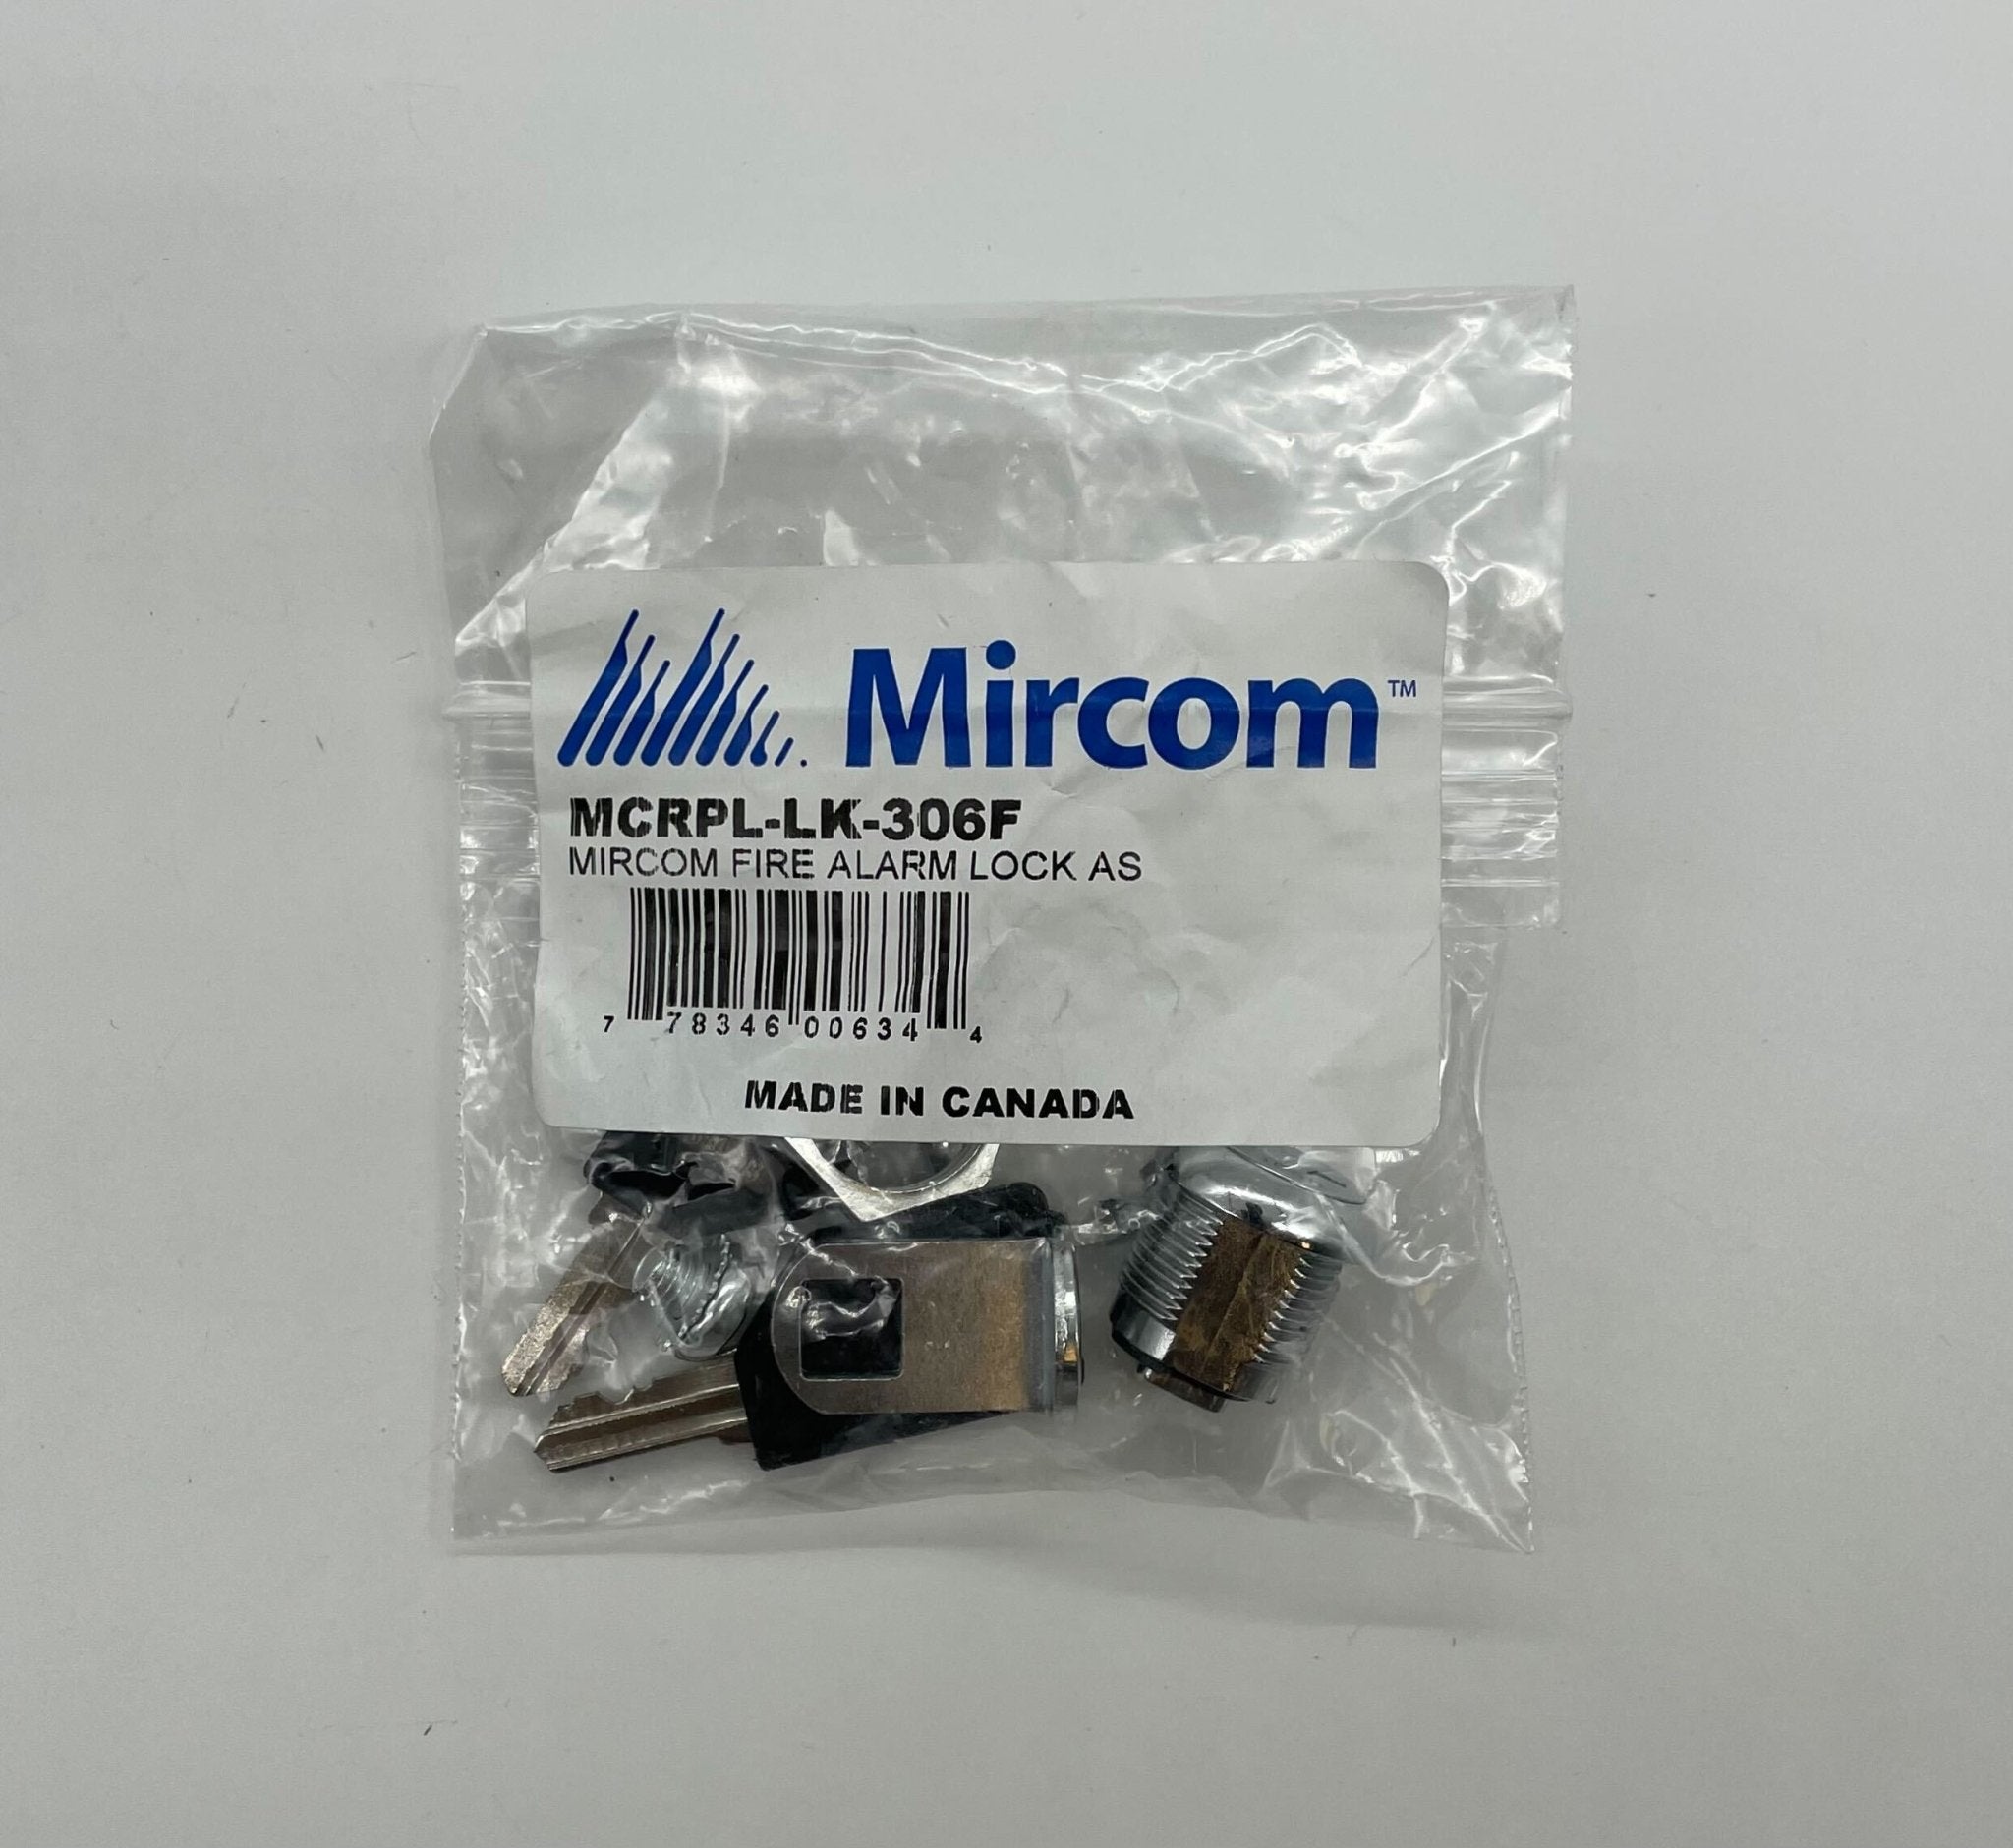 Mircom MCRPL-LK-306F - The Fire Alarm Supplier